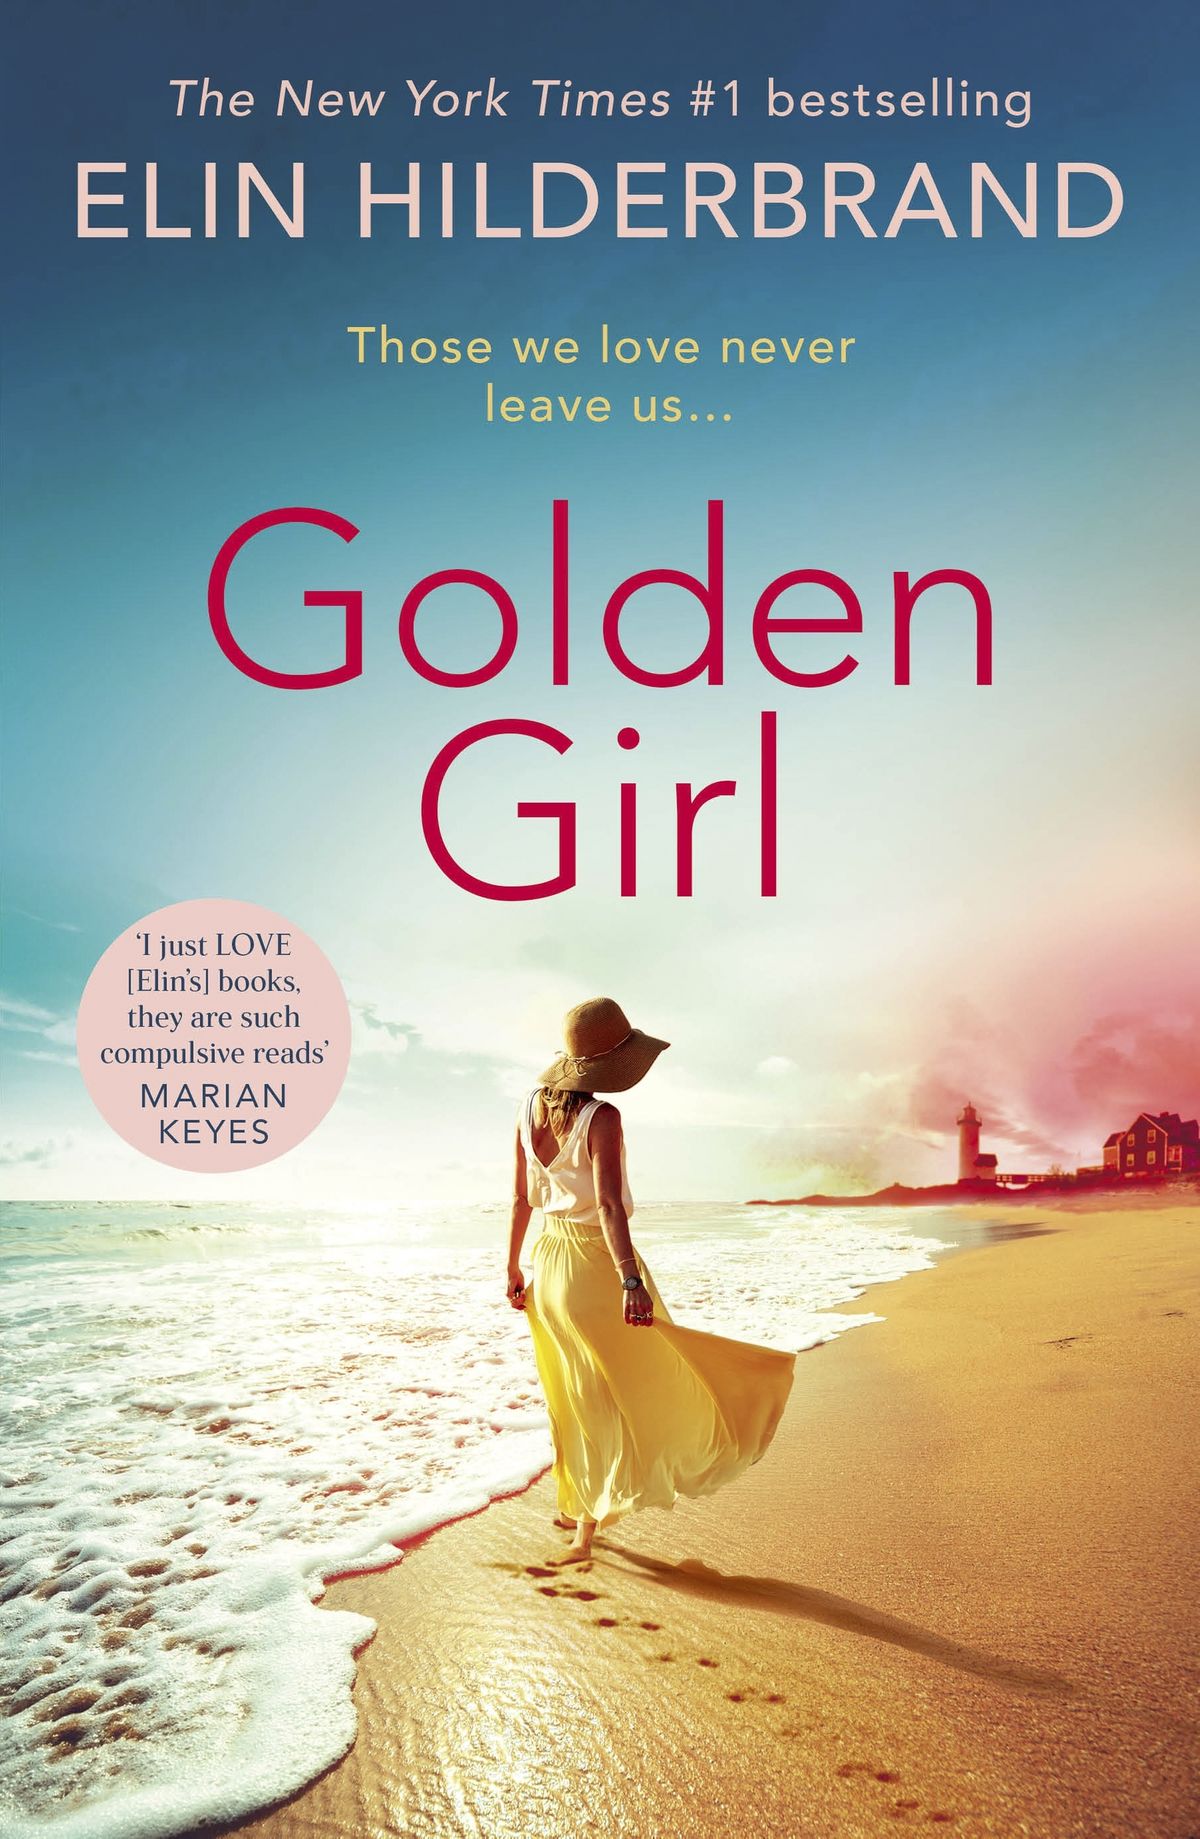 Golden Girl<br />
By Elin Hilderbrand<br />
